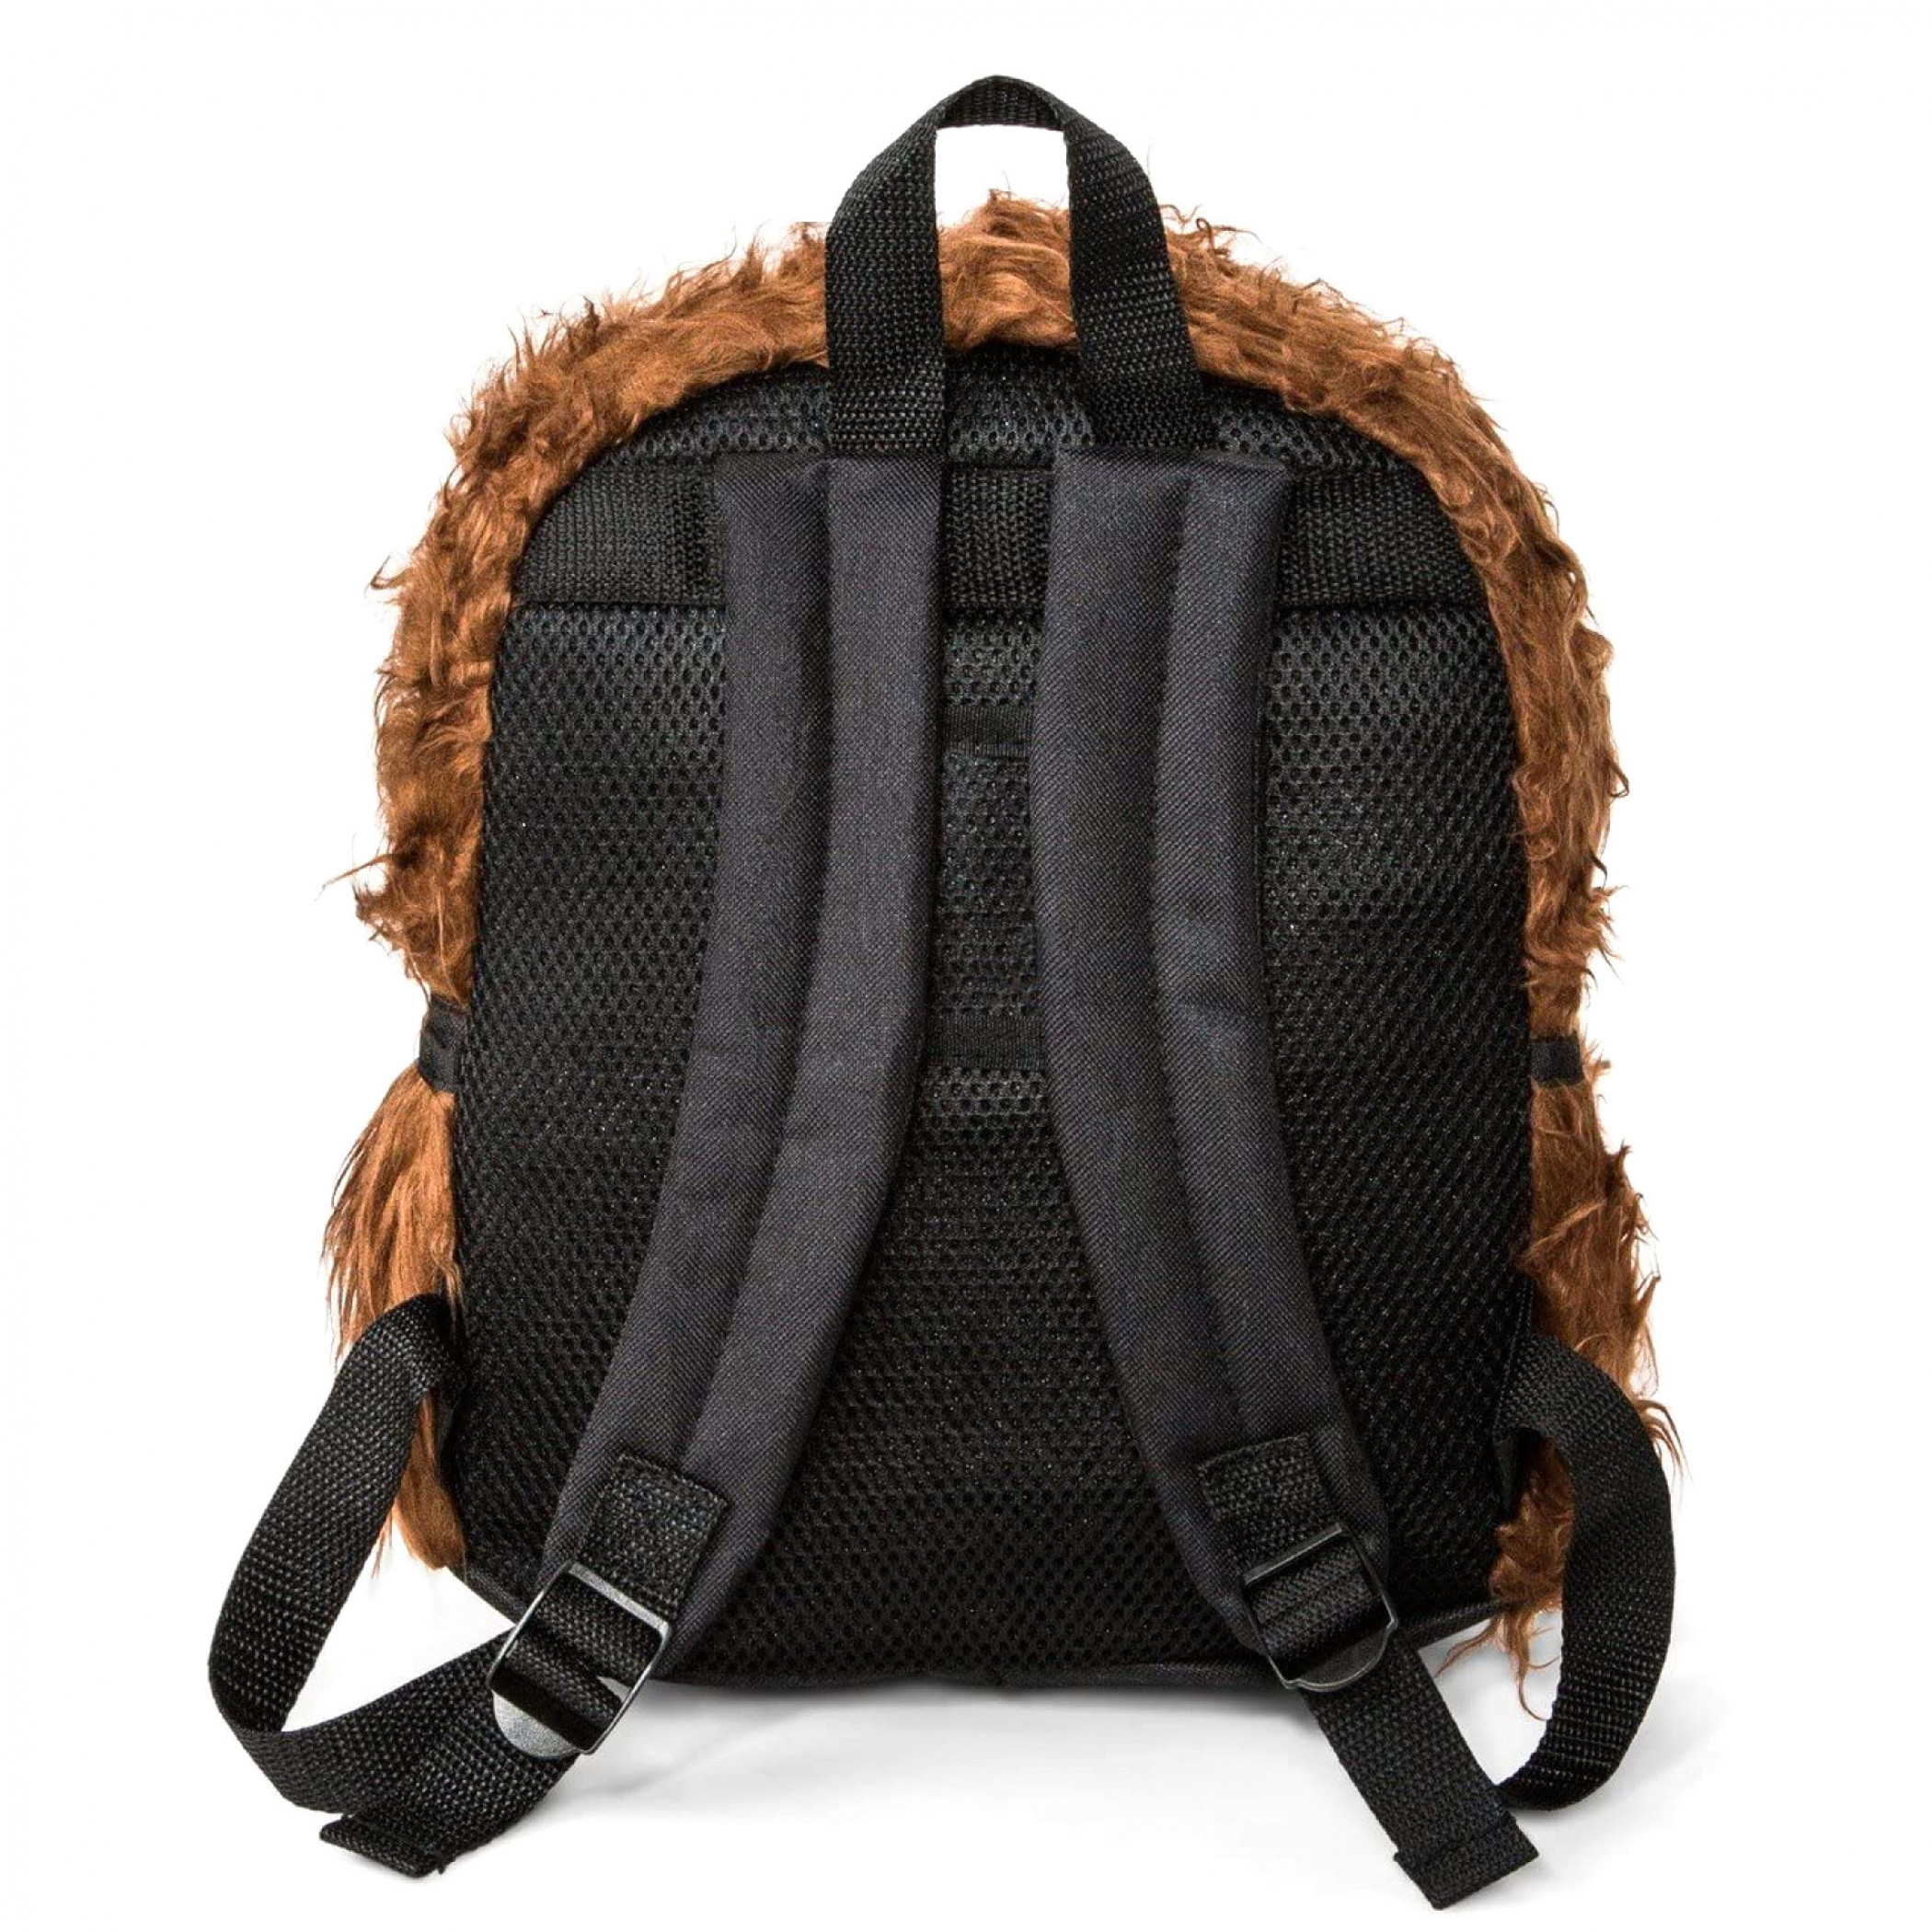 Star Wars Chewbacca 12" Plush Backpack